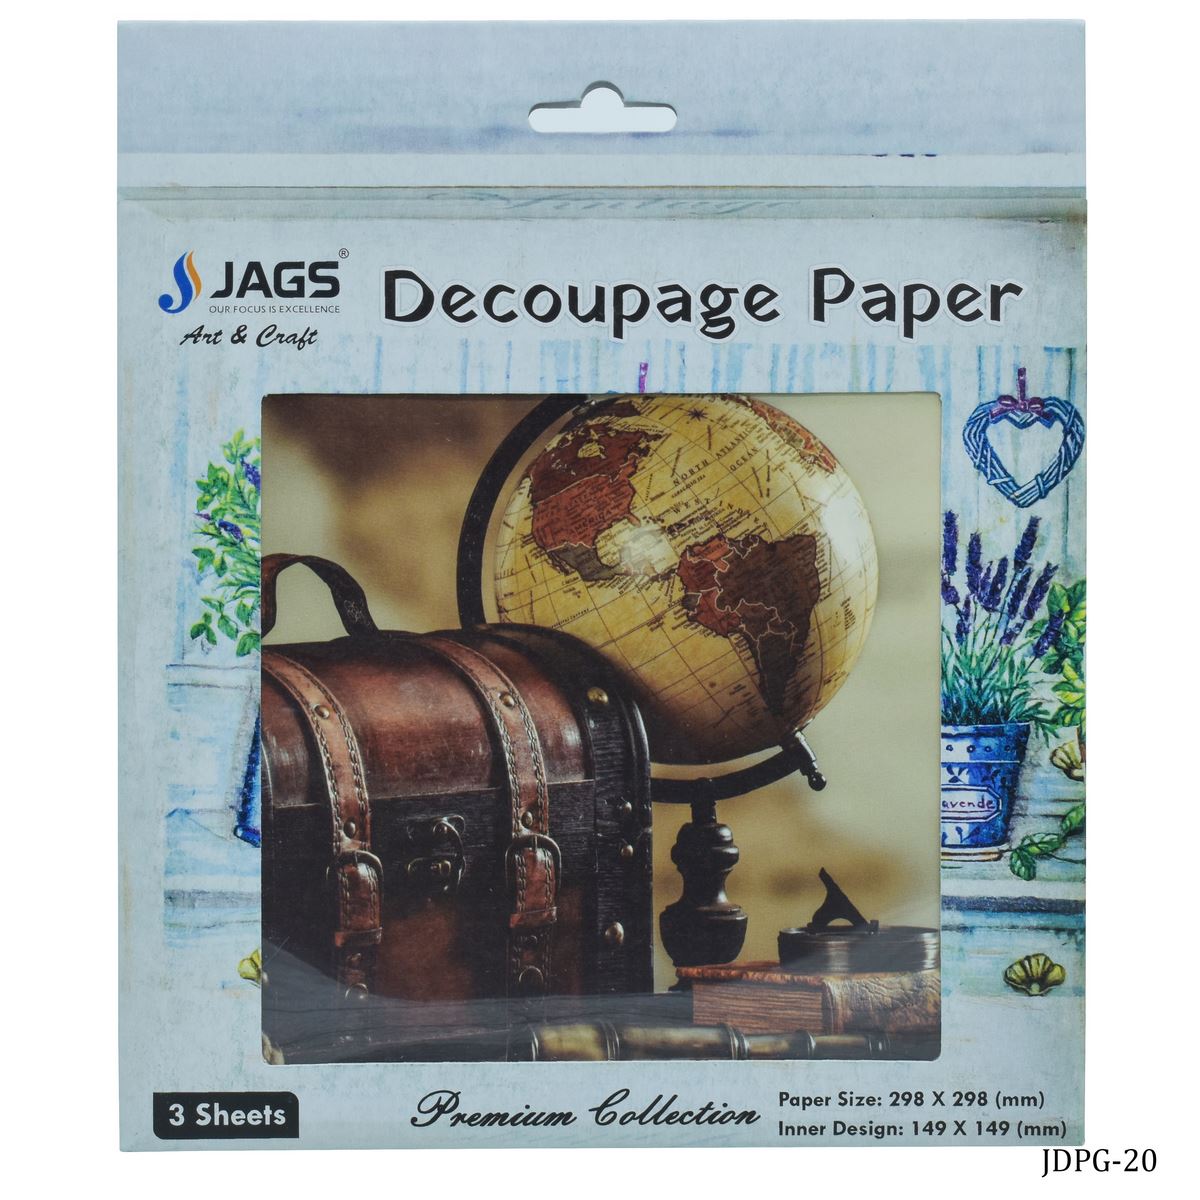 jags-mumbai Decoupage Jags Decoupage Paper Vintage Glob Box JDPG-20